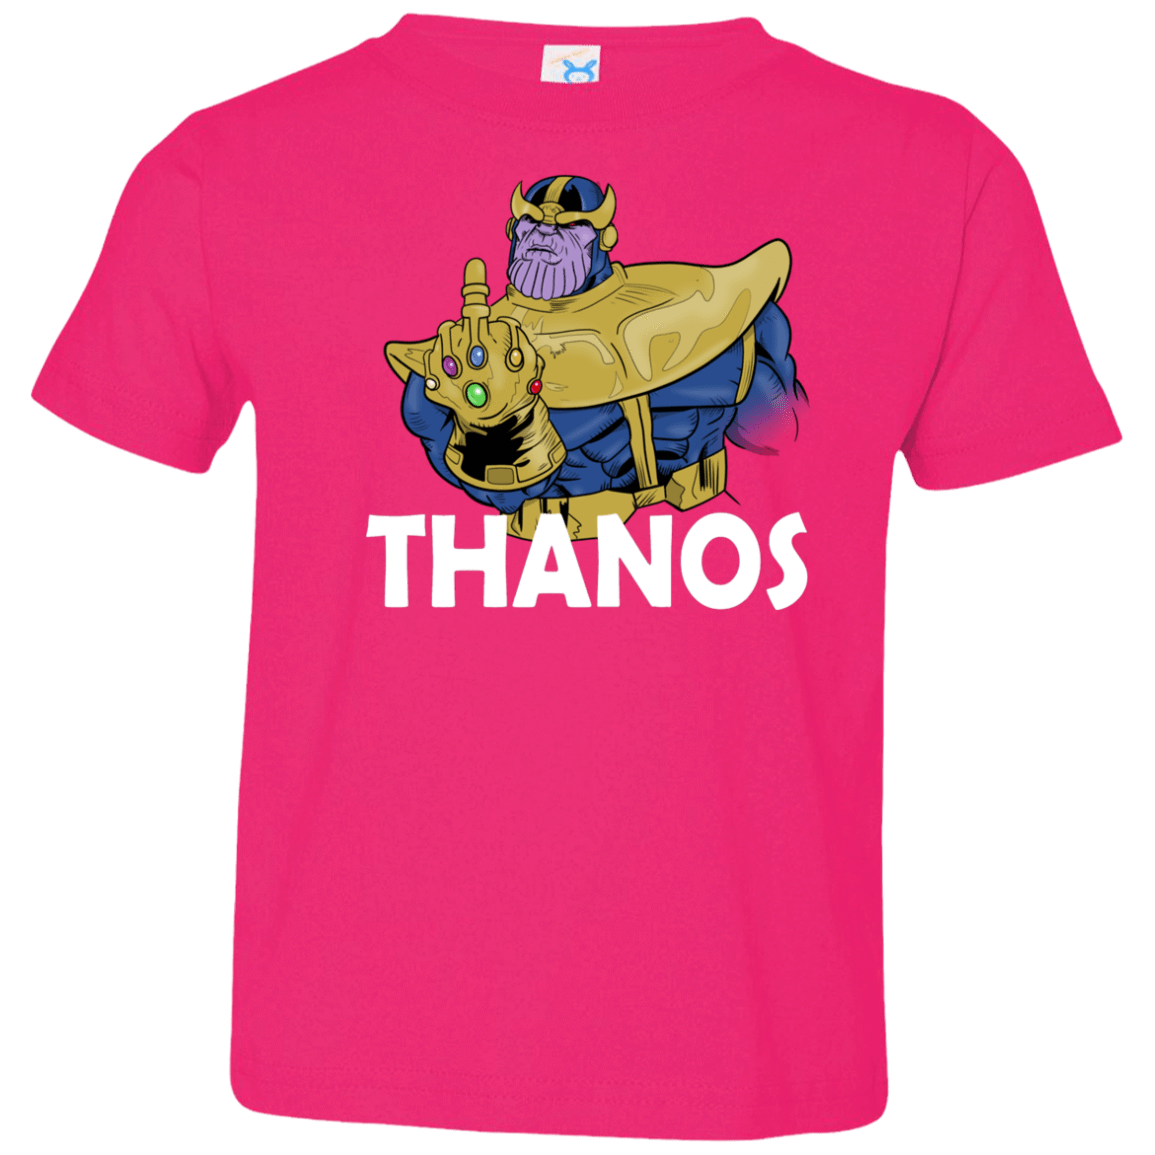 T-Shirts Hot Pink / 2T Thanos Cash Toddler Premium T-Shirt